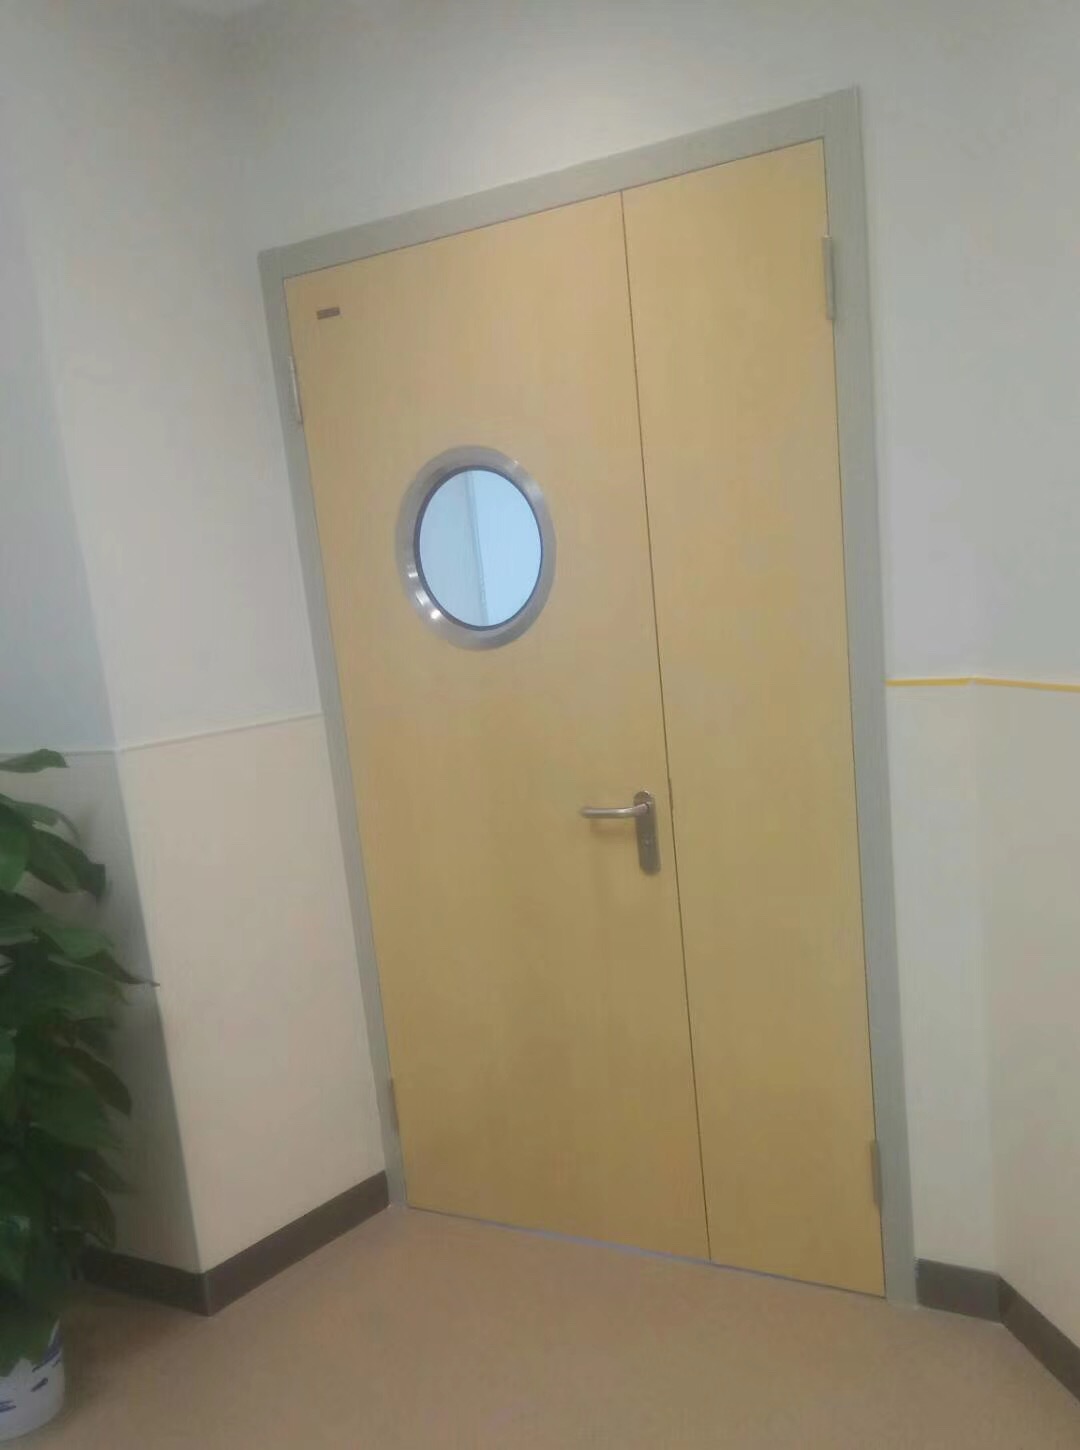 steel hospital patient room door